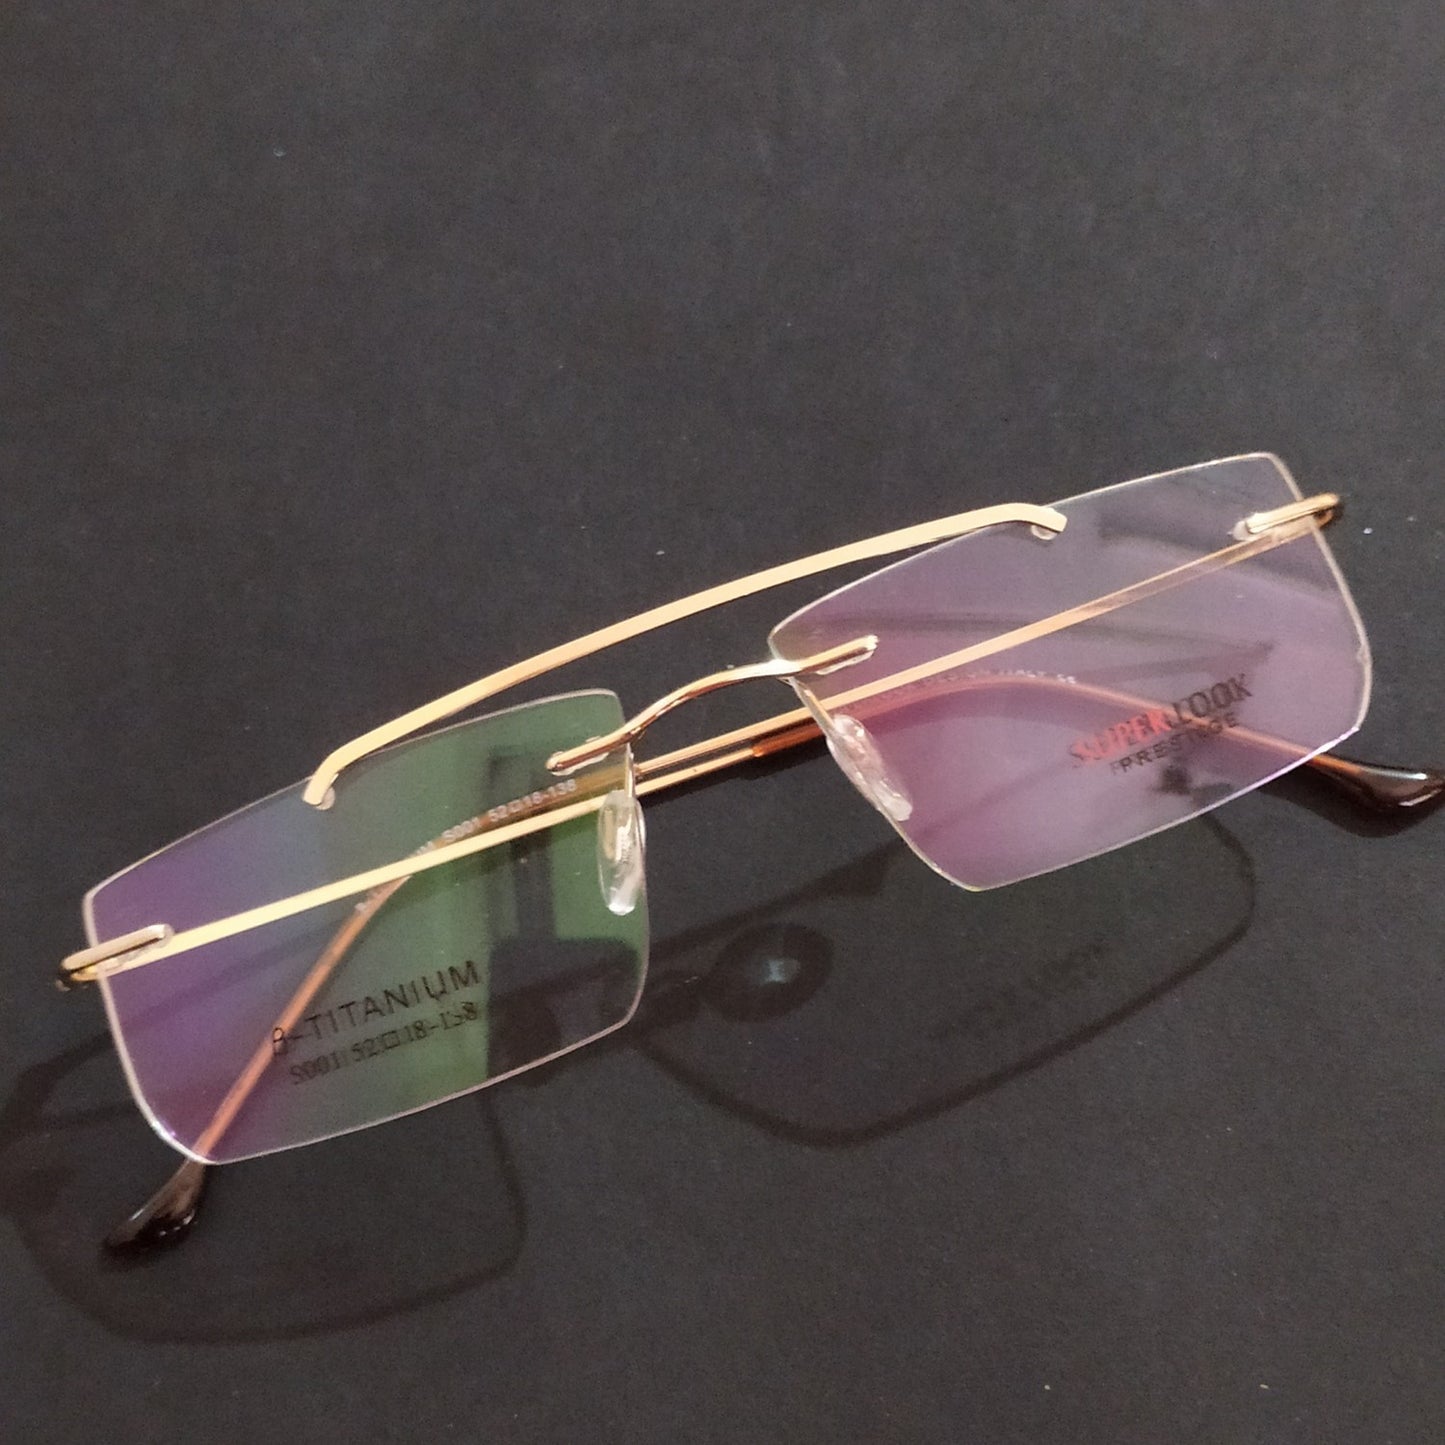 Gold Rectangle Rimless Glasses Frameless Specs with Blue Light Filter Lenses